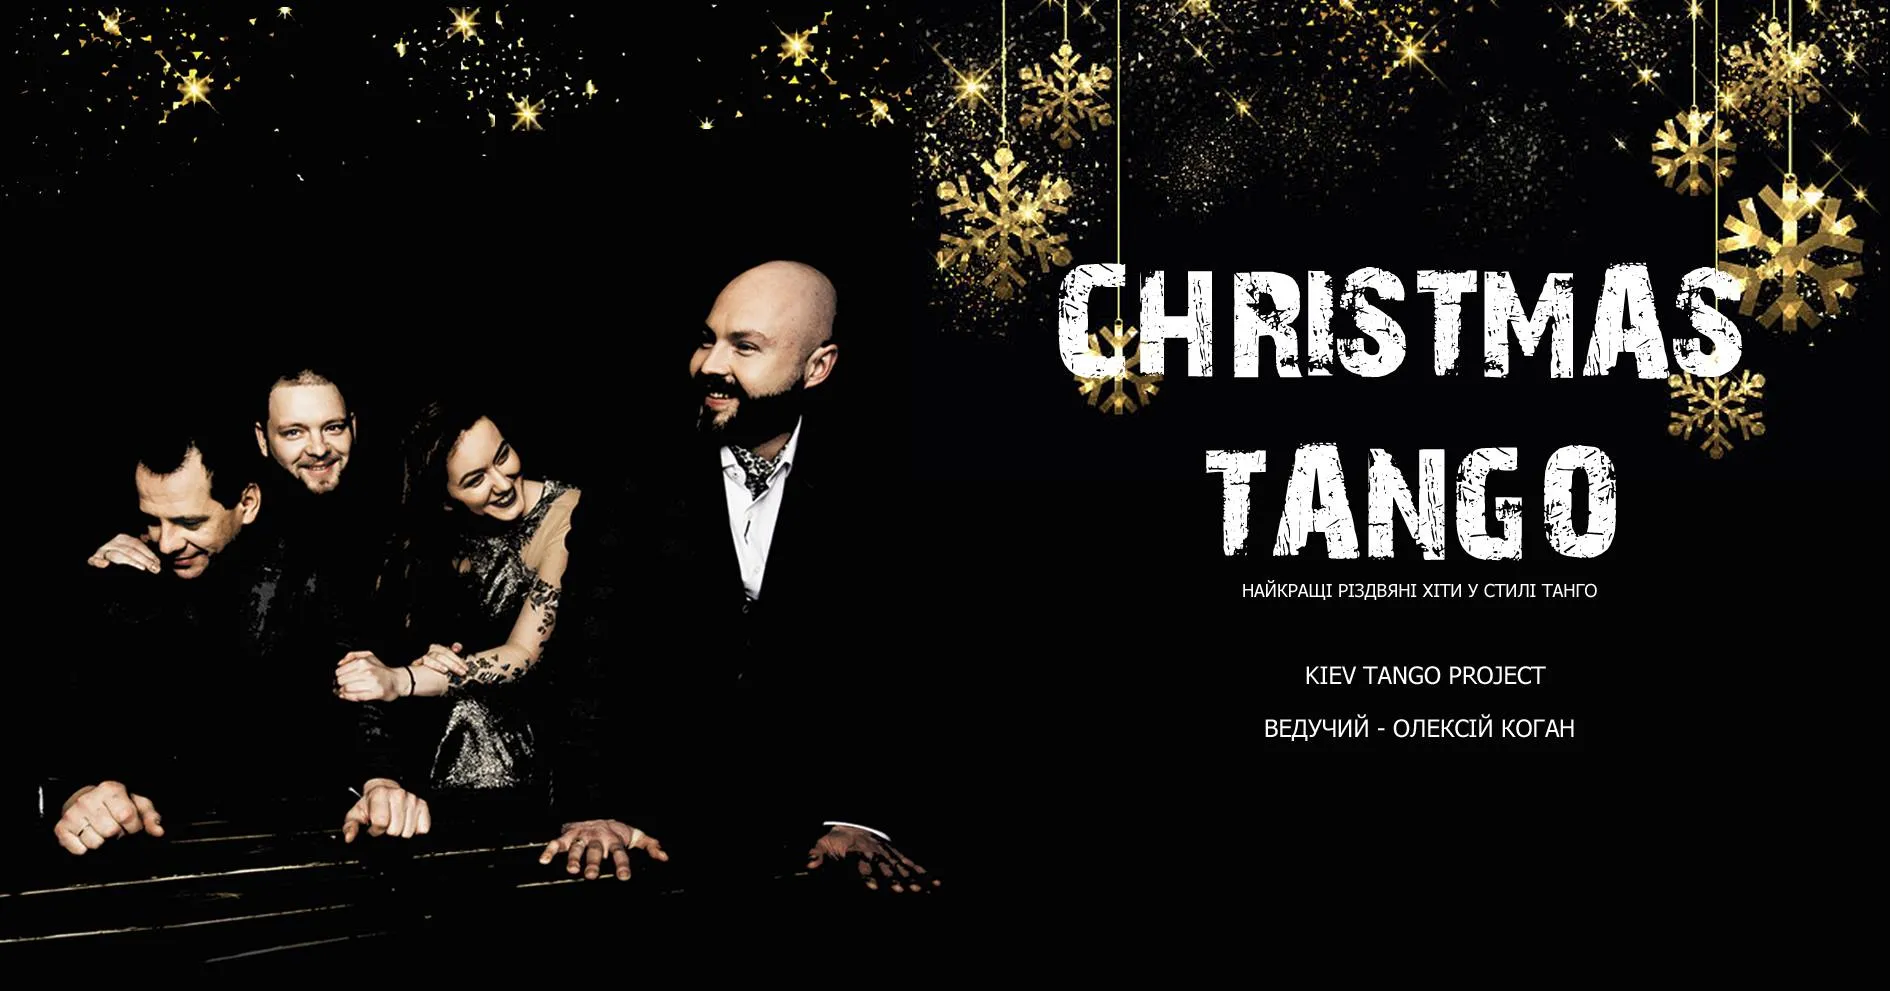 Kiev Tango Project: Christmas Tango